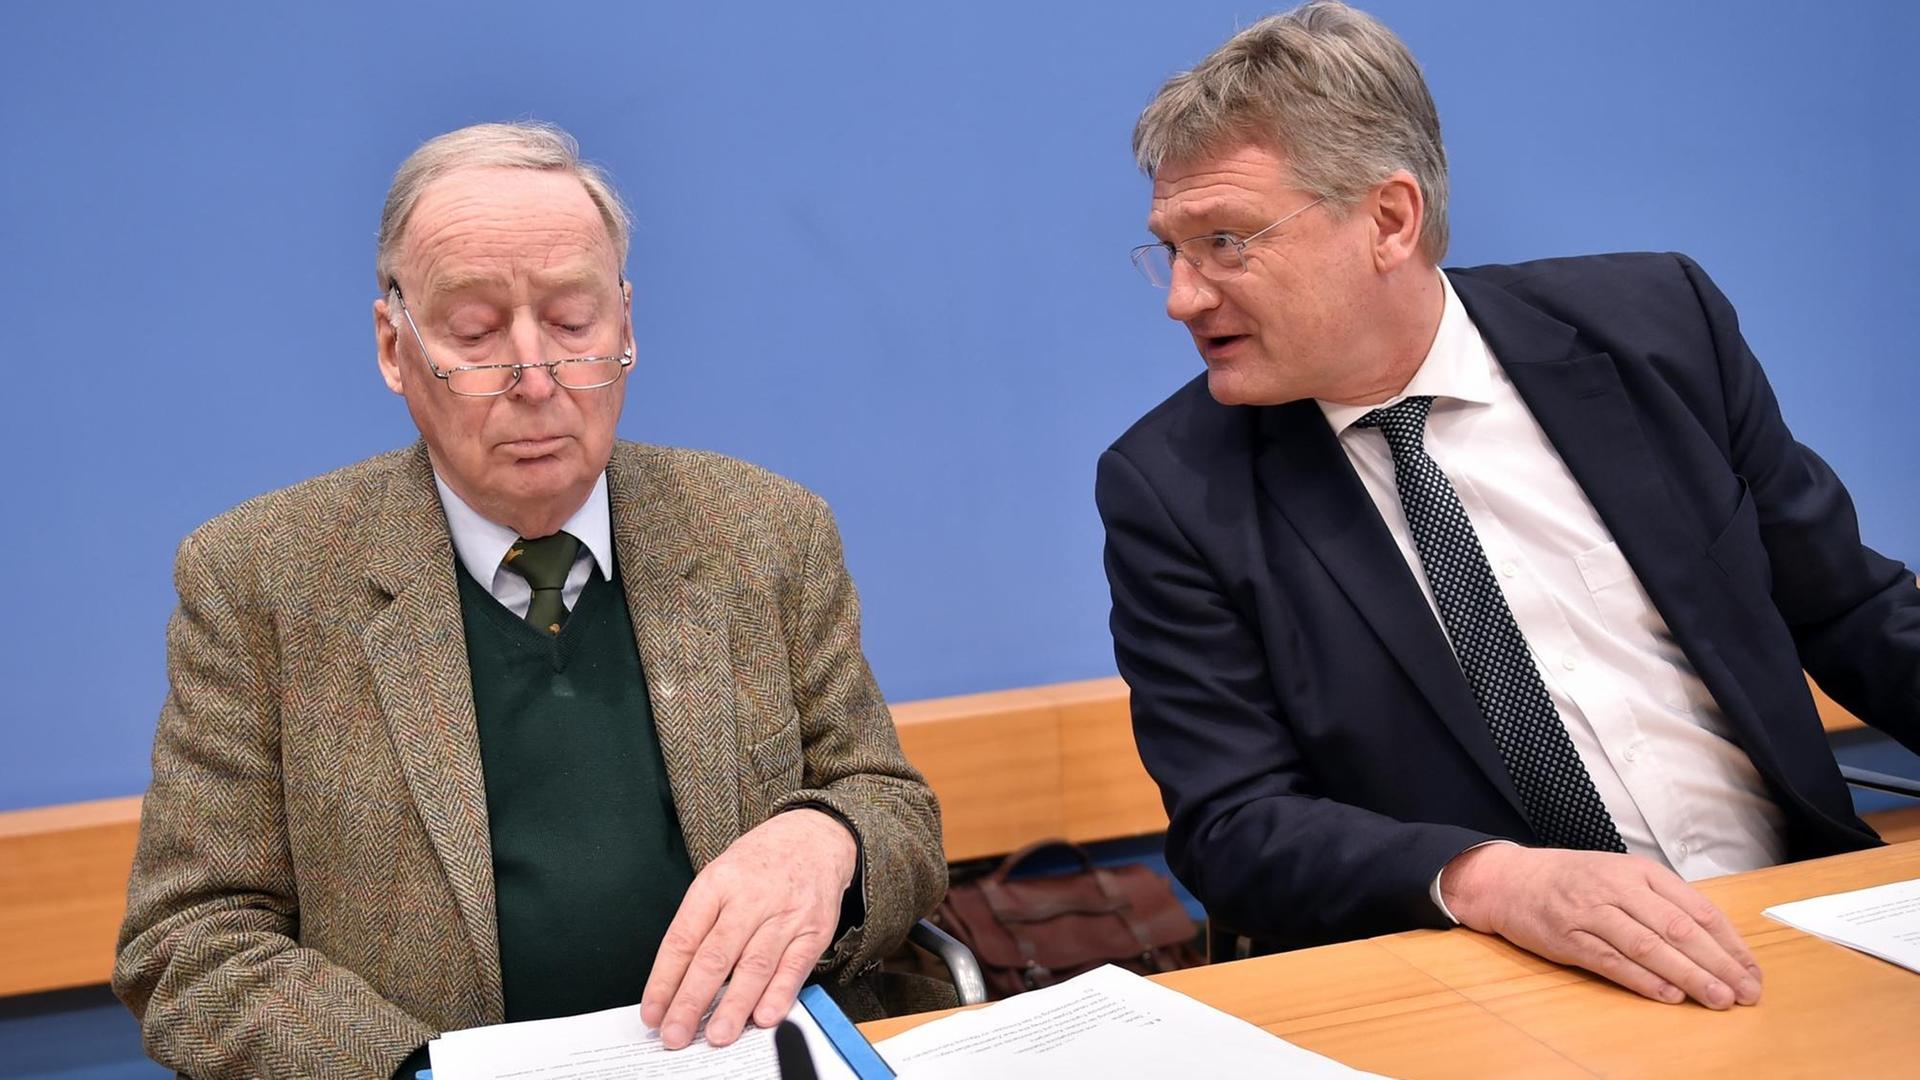 Alexander Gauland und Jörg Meuthen, Bundesvorsitzende der AfD, sprechen zur Unterzeichnung des Koalitionsvertrages zwischen CDU, CSU und SPD.